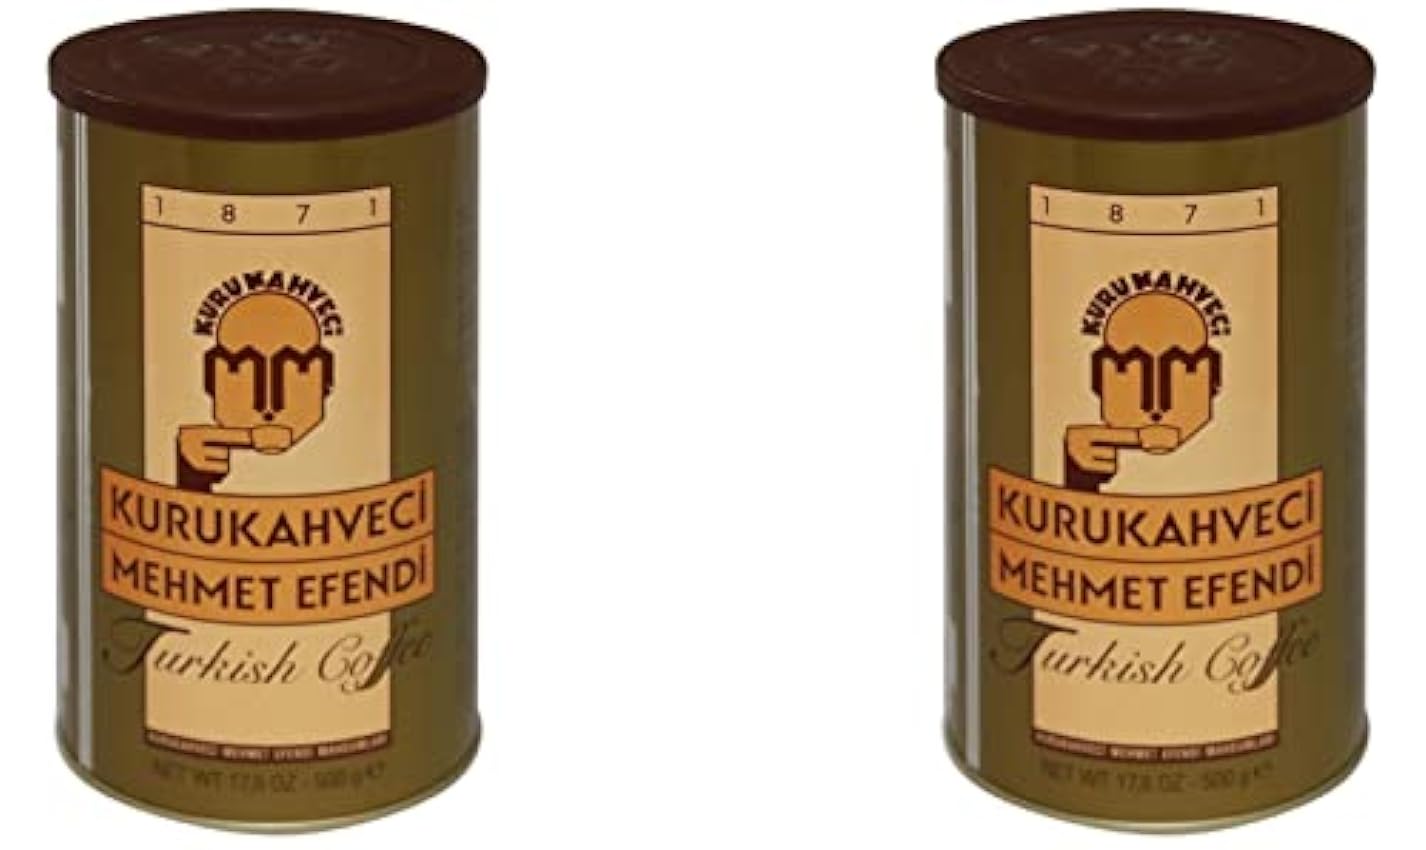 Kurukahveci Mehmet Efendi Turc Coffee 2 Pack (2 x 500 g